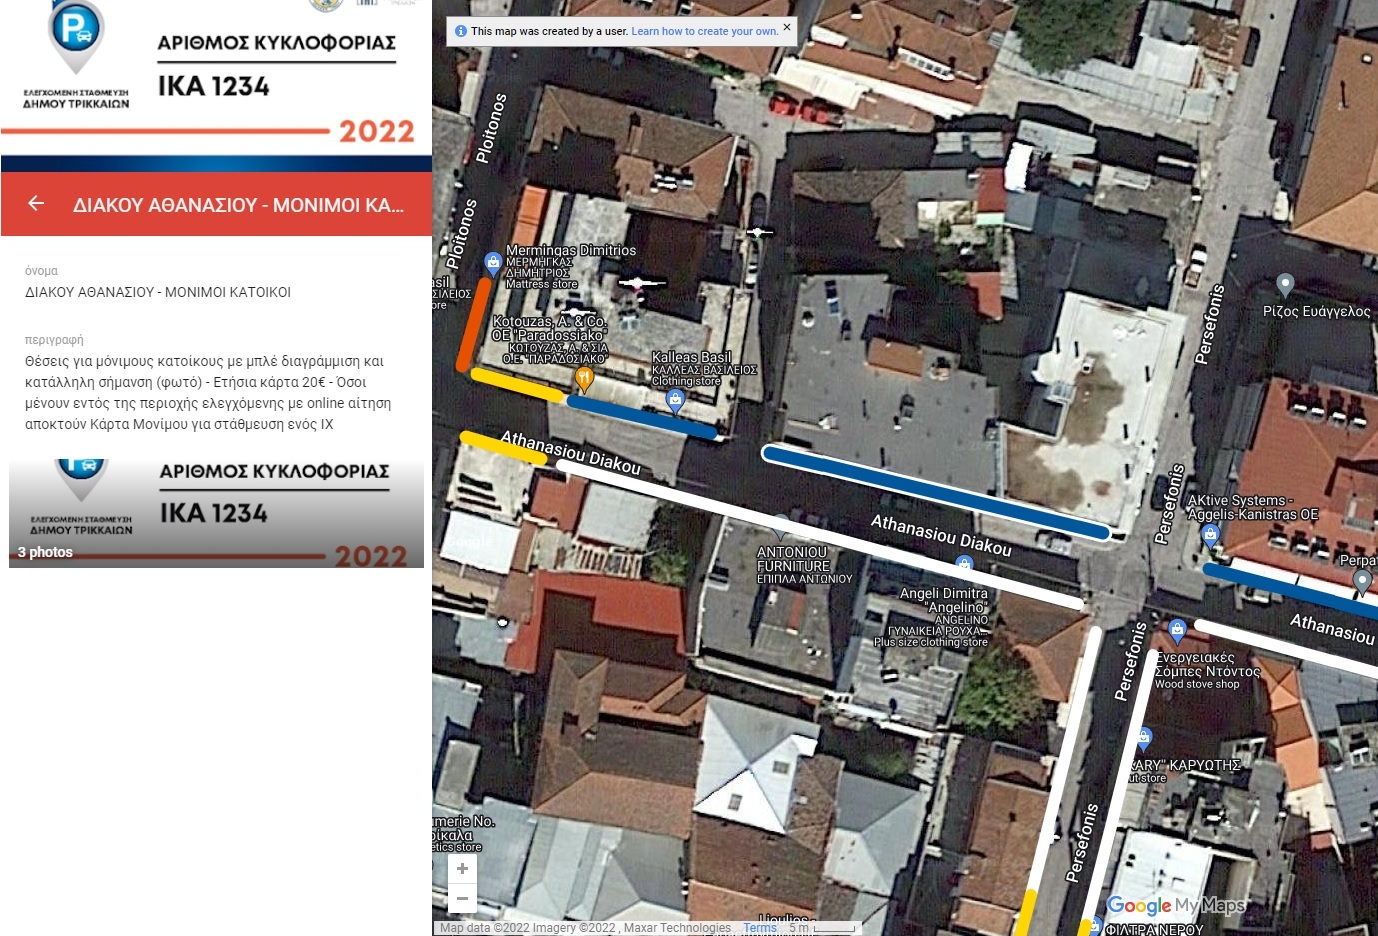 Δημόσια διαβούλευση για τις πρώτες 820 θέσεις ελεγχόμενης στάθμευσης στα Τρίκαλα  